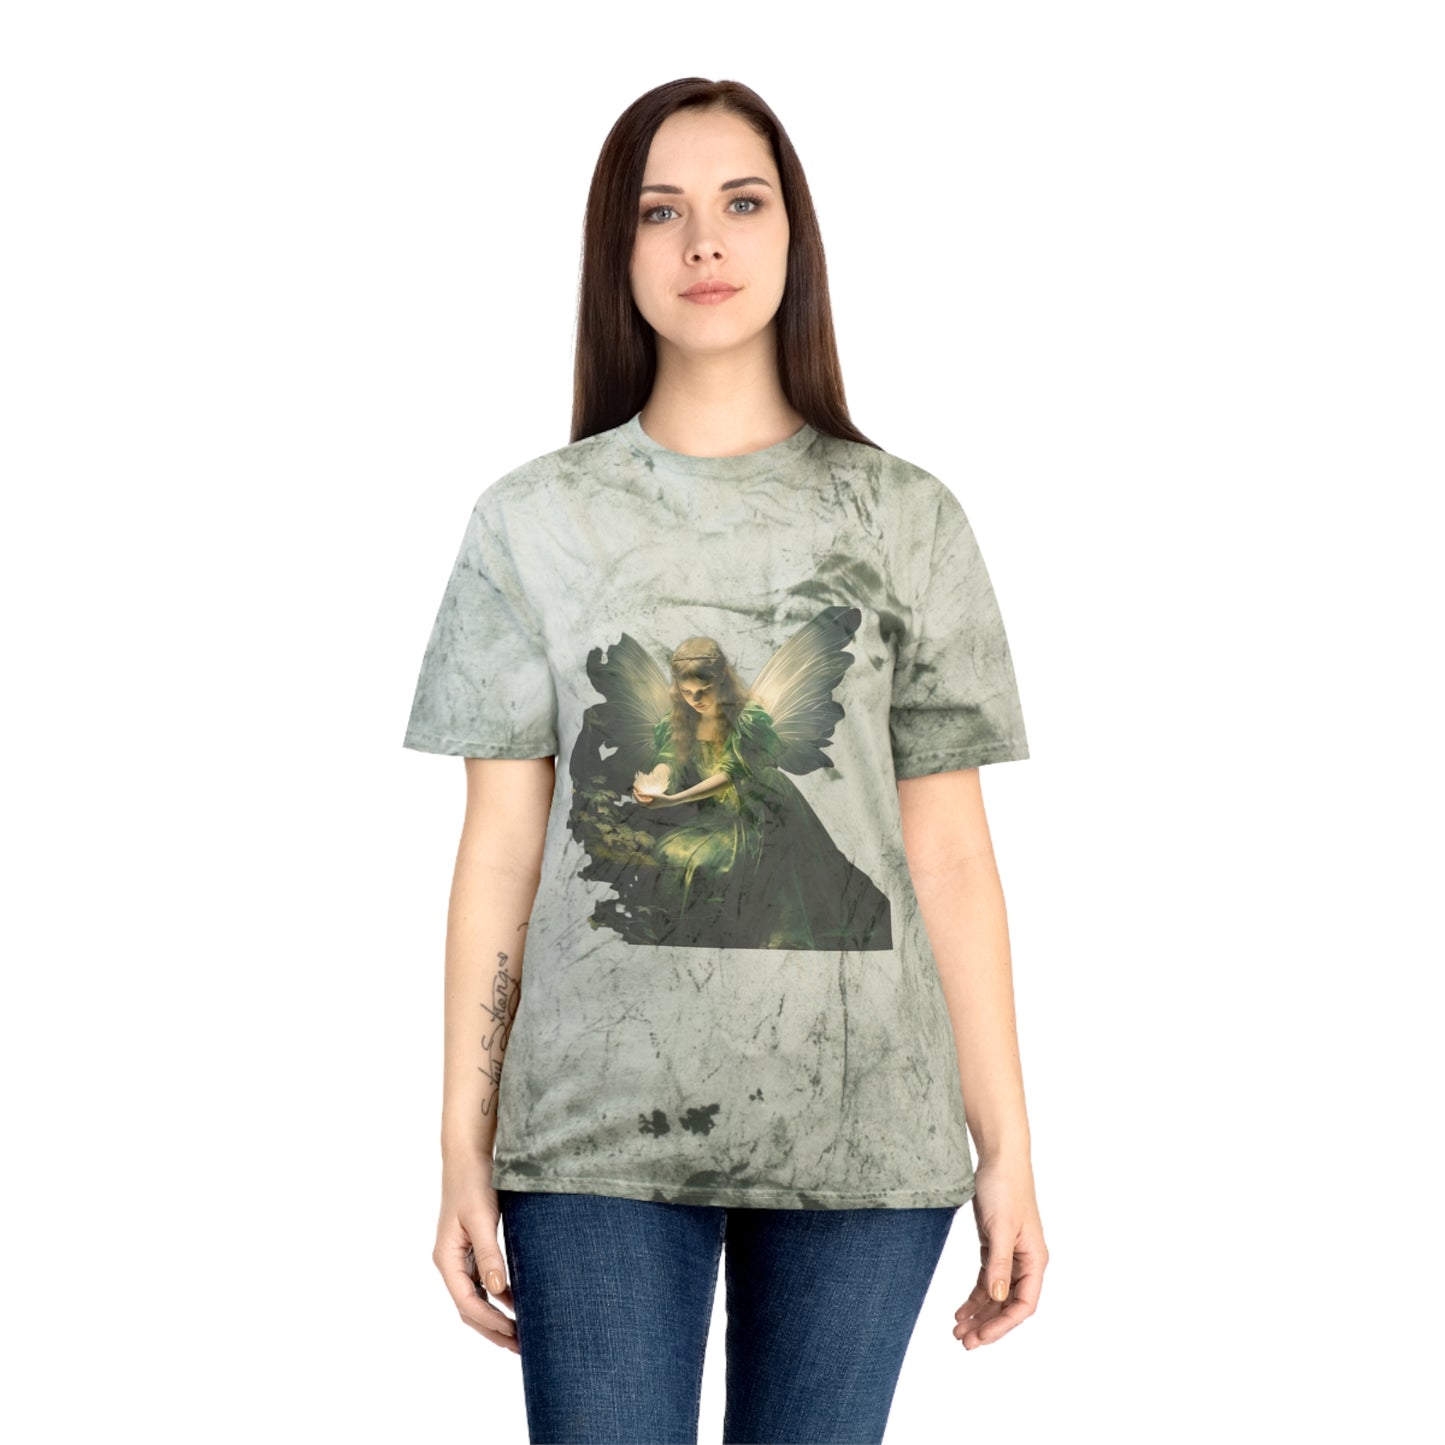 Grunge Fairycore Clothing, Tie Dye Forest Boho 90's Cottagecore Aesthetic T-shirt